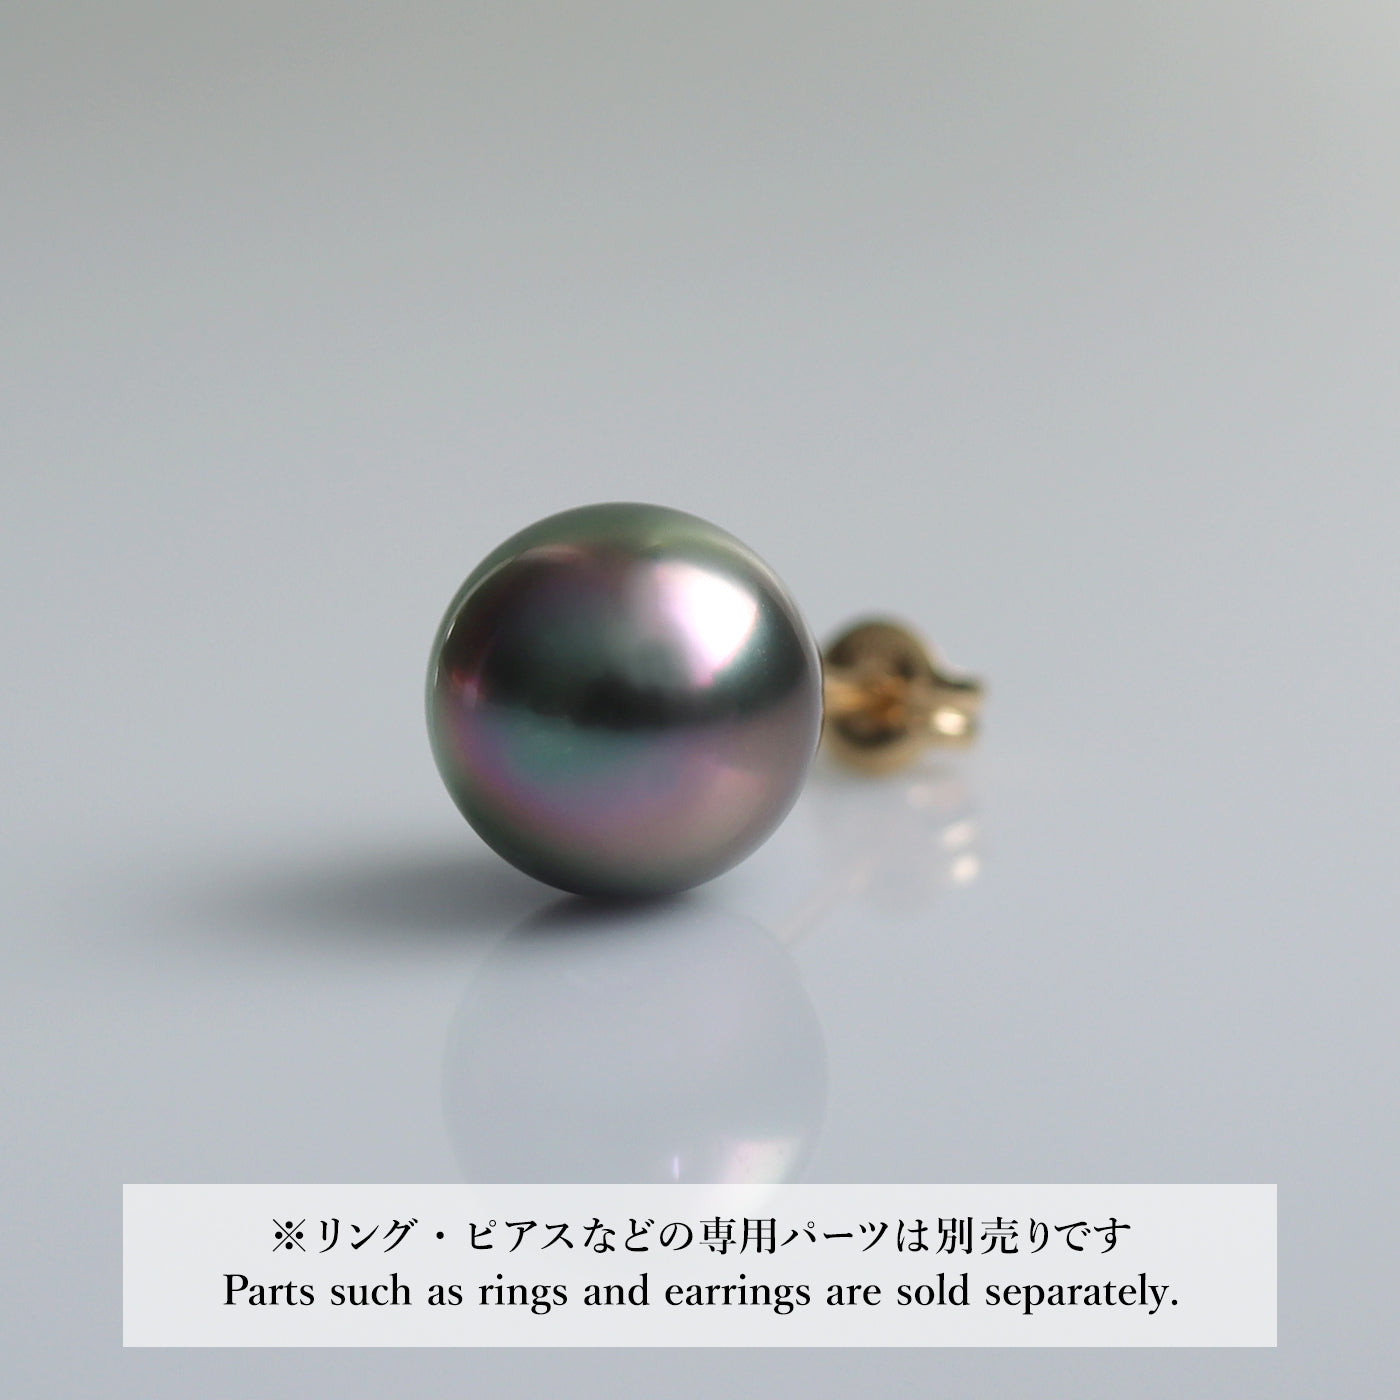 【COLLECTIBLE】 Tahitian Pearl (No. CT31081)